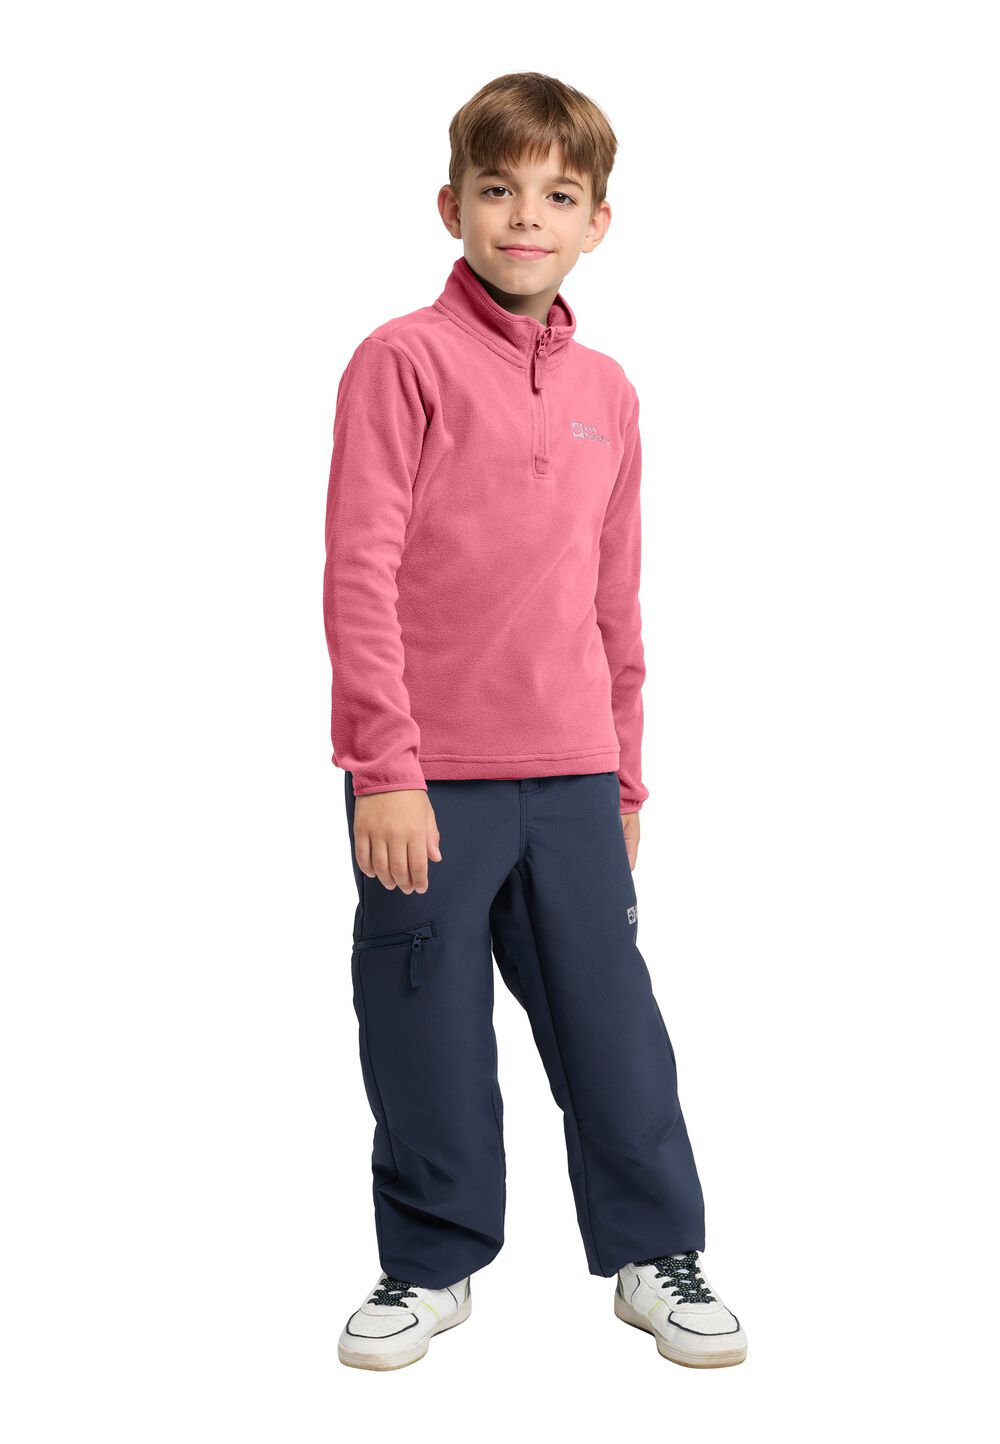 Jack Wolfskin Taunus Halfzip Kids Fleece trui Kinderen 140 soft pink soft pink